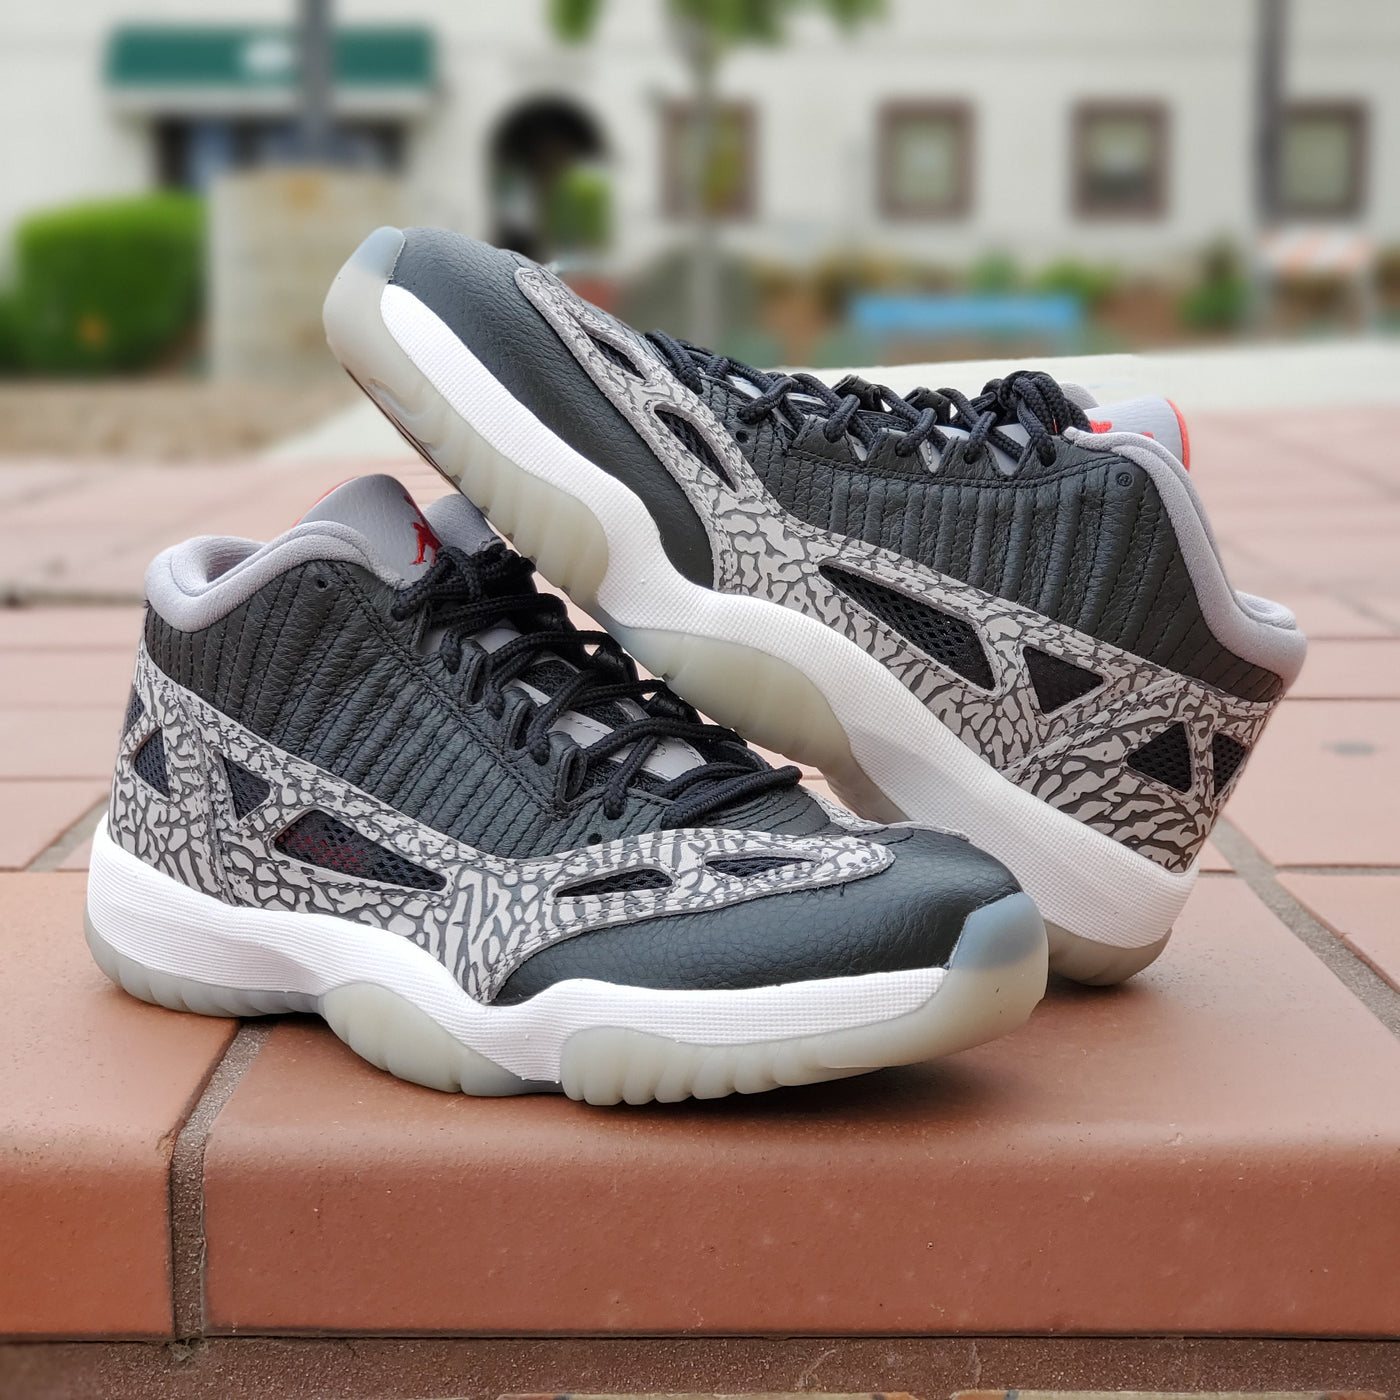 Air Jordan 11 Retro Low IE 'Black Cement' | Men's Size 10.5